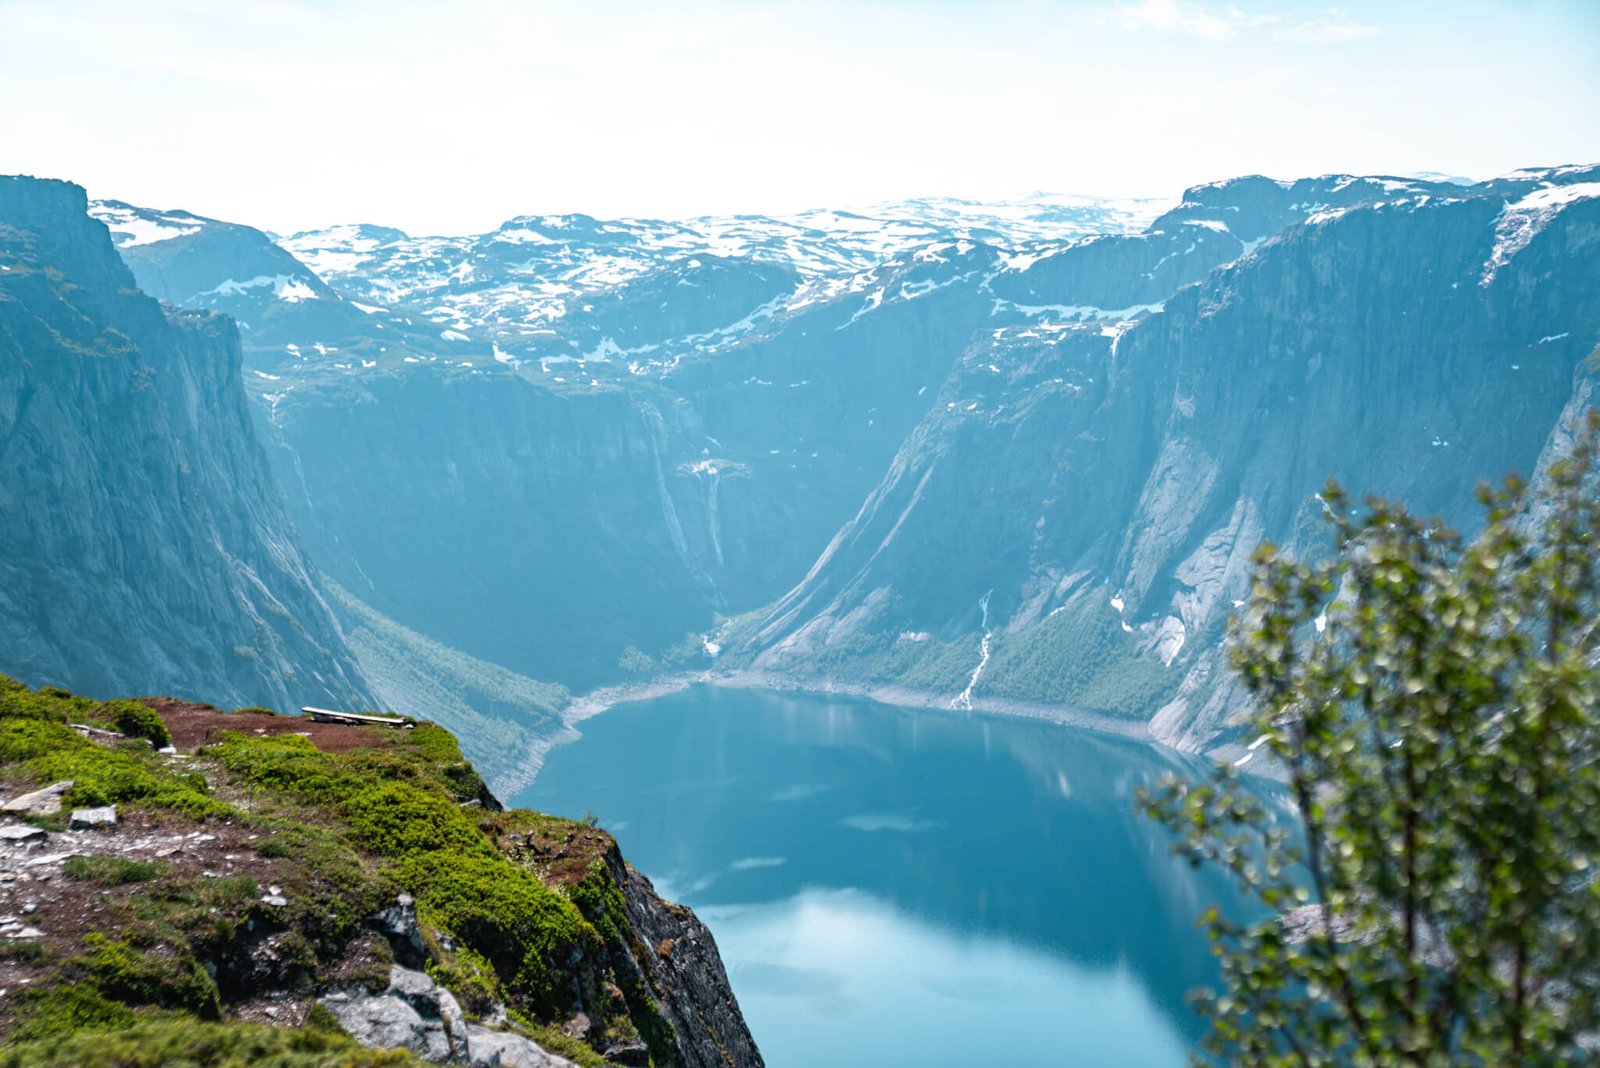 Hiking Trolltunga in Norway